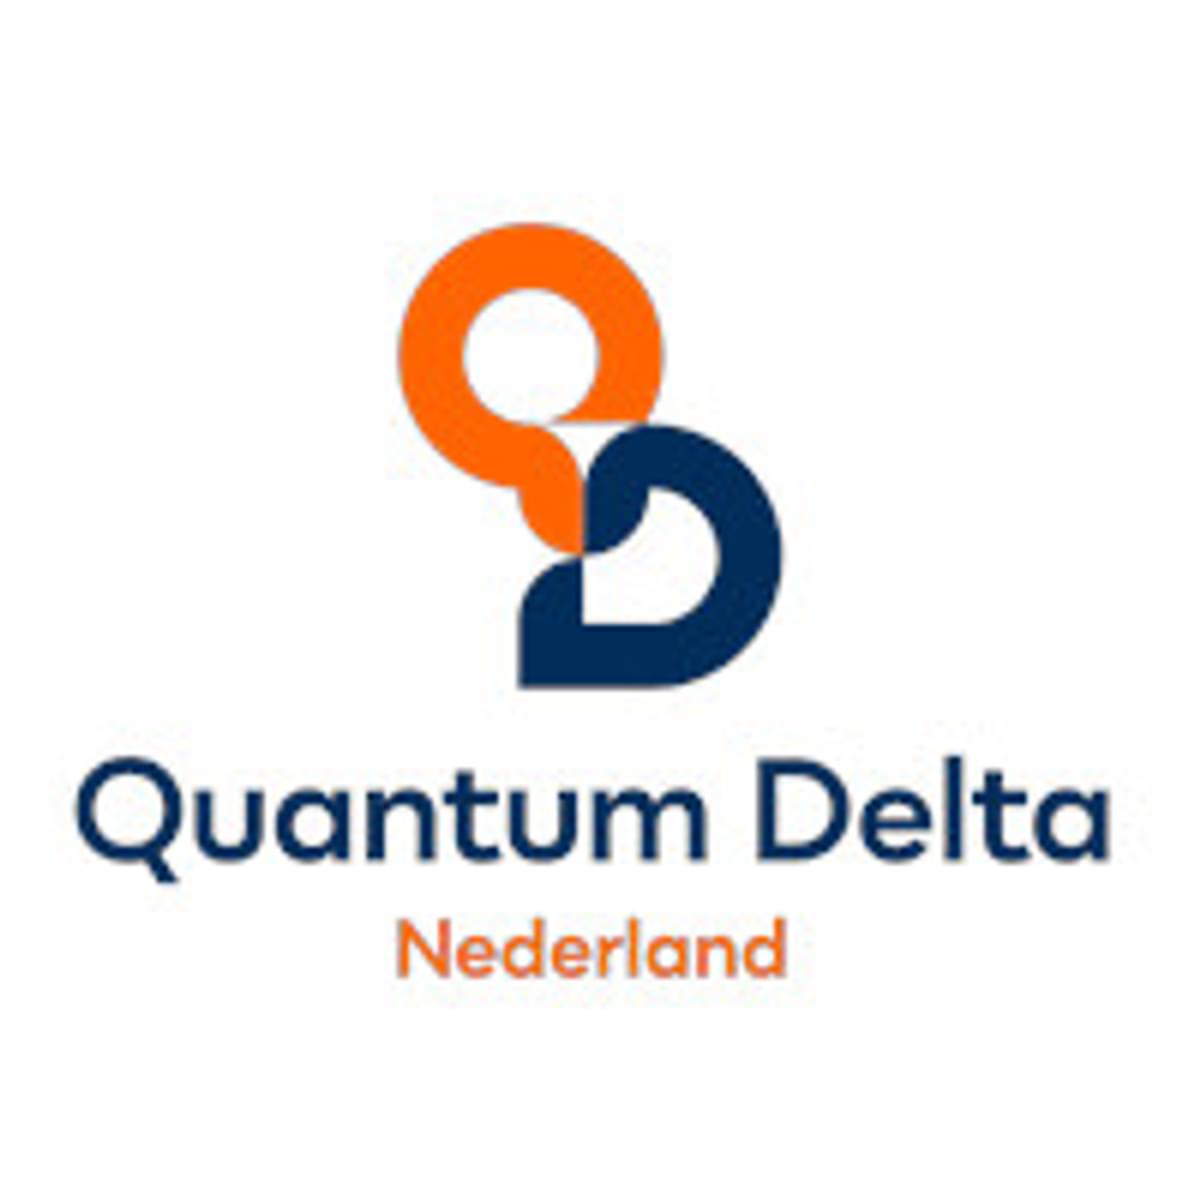 Quantum Delta NL bundelt quantumkrachten met Frankrijk image